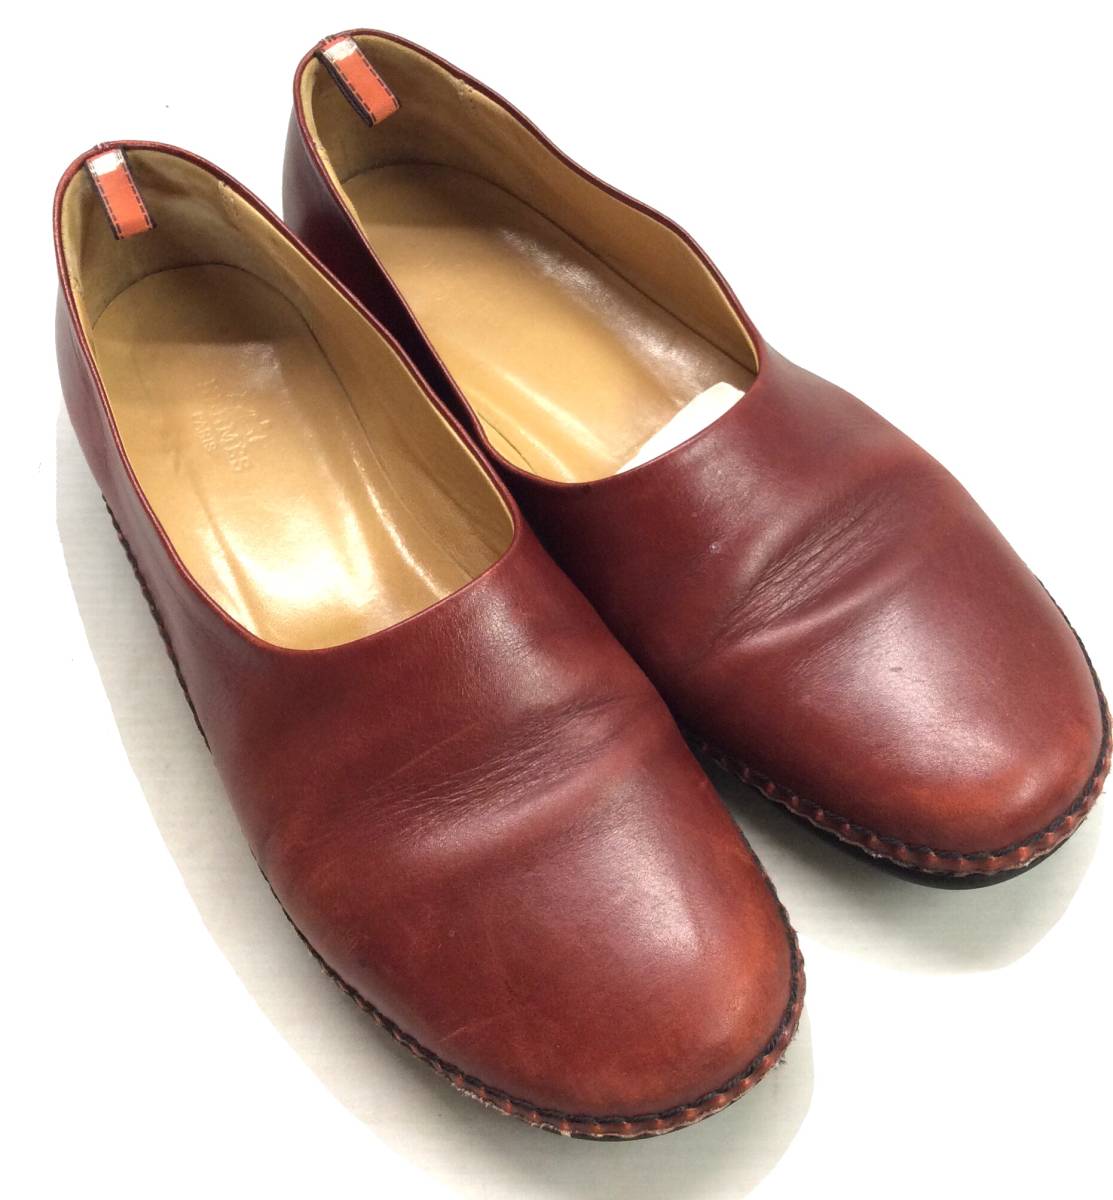 HERMES エルメス レザーシューズ パンプス 靴 赤系 ITALY製 レディース 38 (ma)_画像2